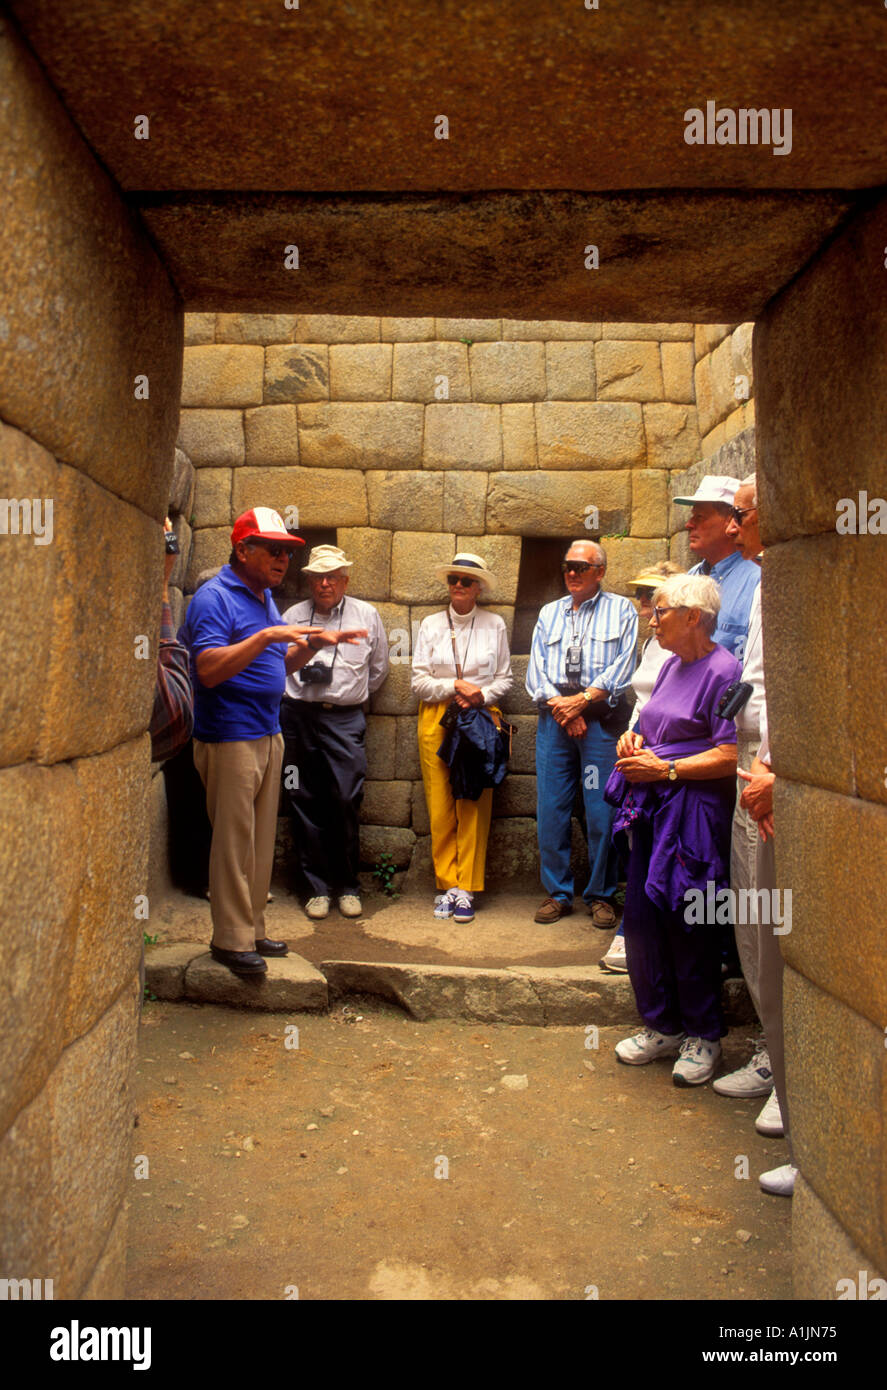 Amerikanische Touristen, Elder reisen, Touristen, Besucher, Besuch, Machu Picchu, die Verlorene Stadt der Inkas, Urubamba River Valley, Peru, Südamerika Stockfoto